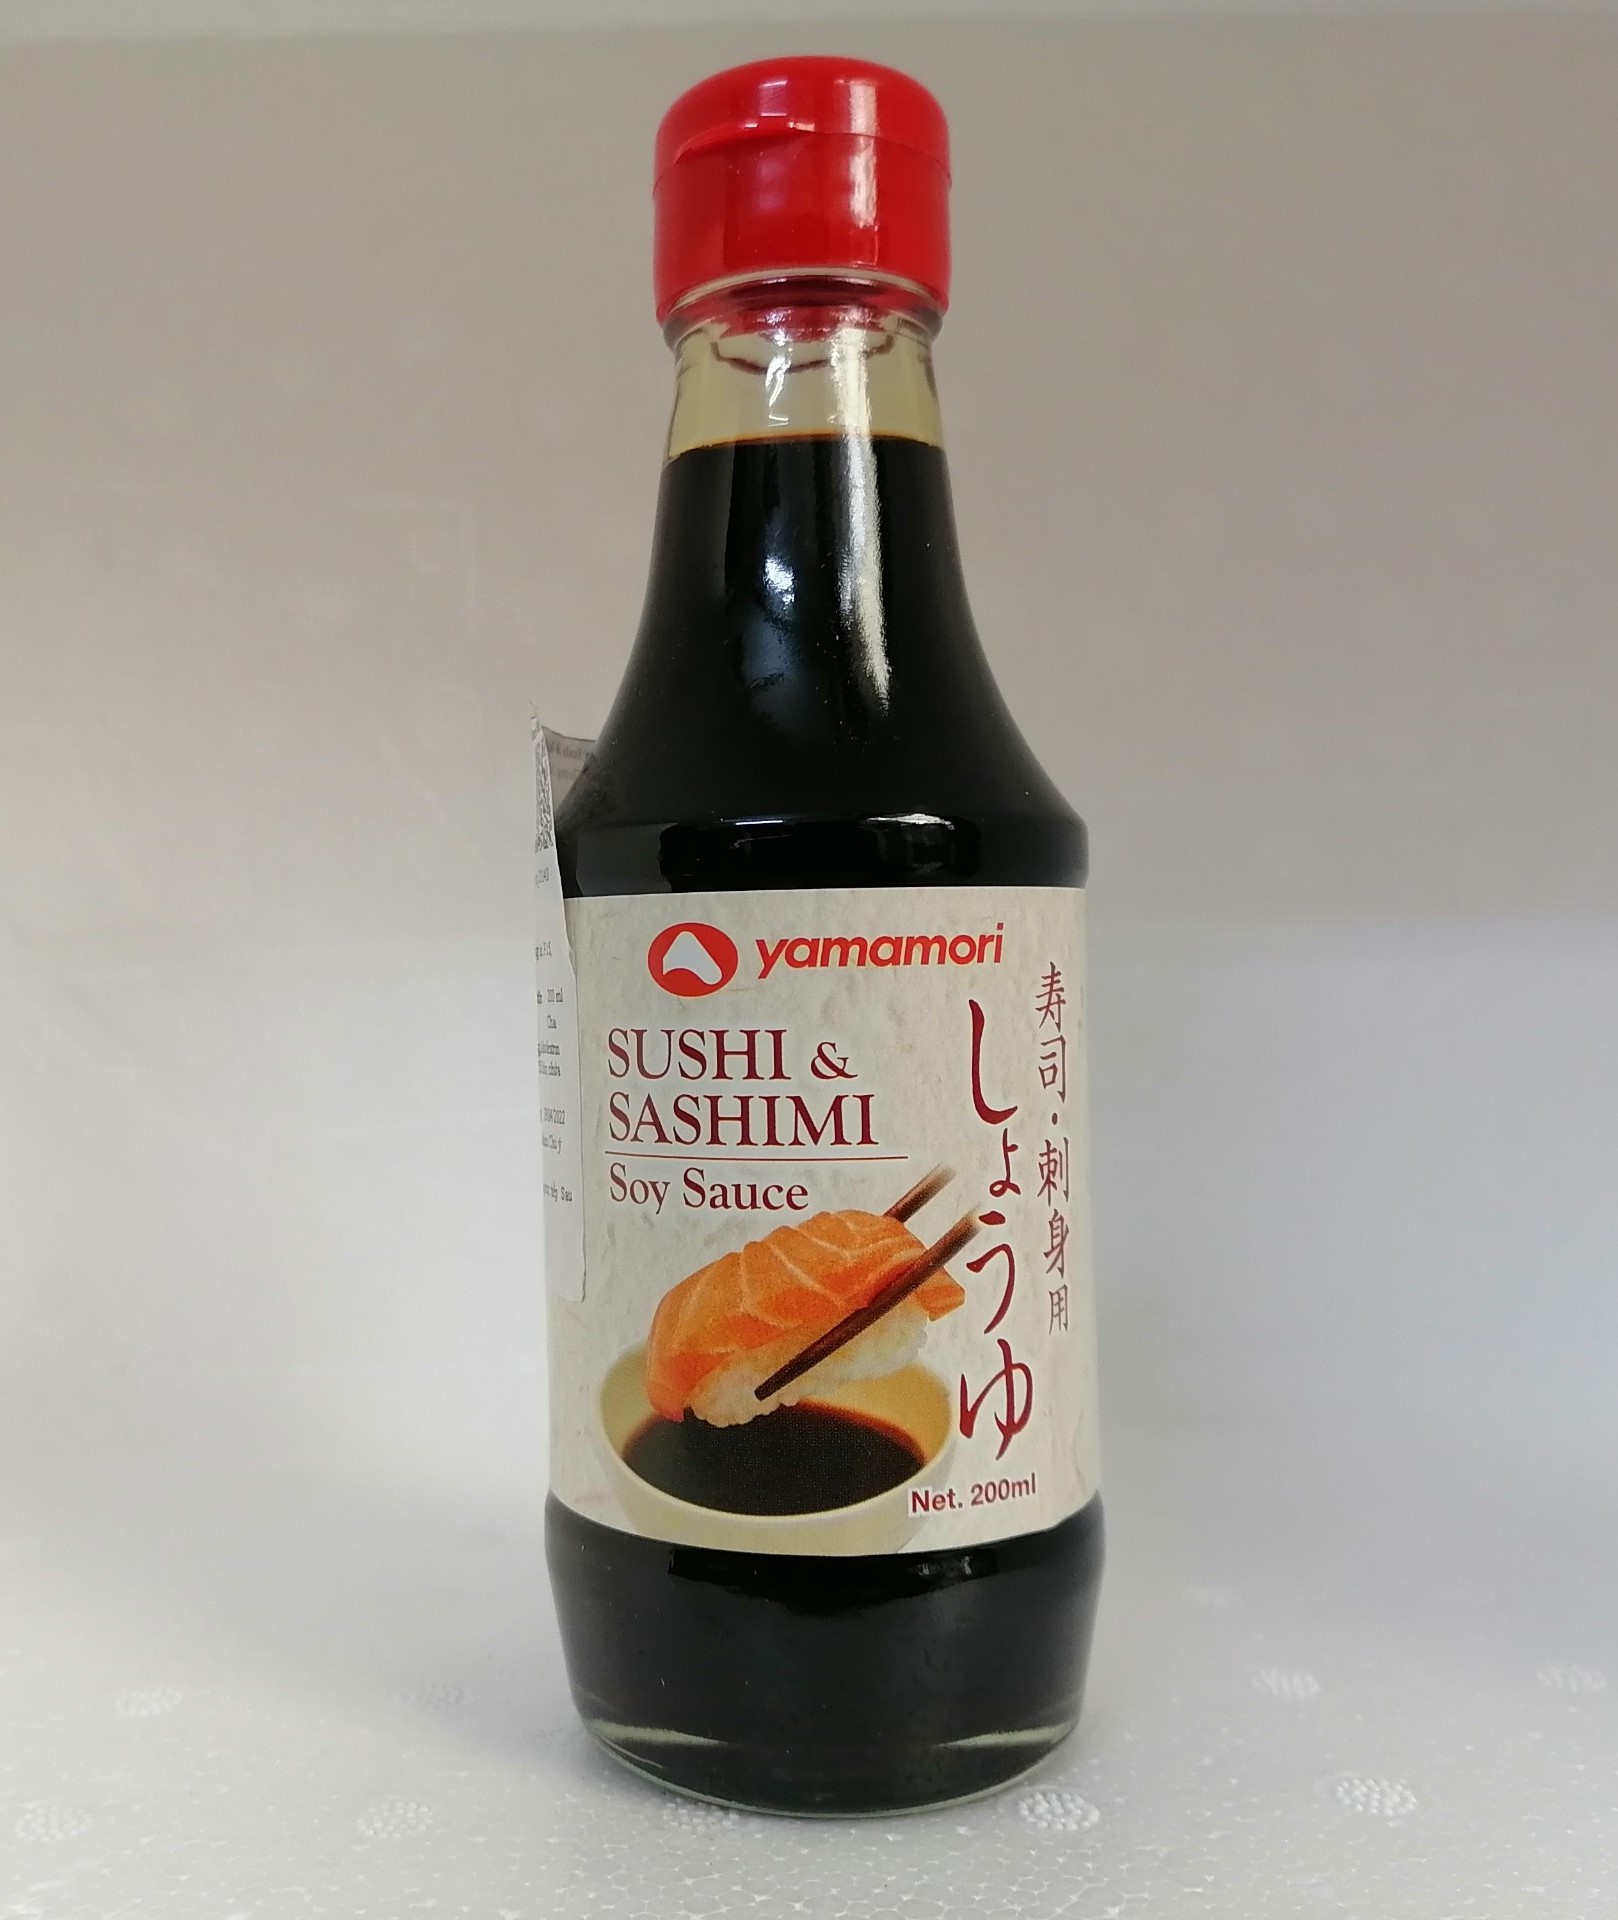 Chai nhỏ 200ml NƯỚC TƯƠNG SUSHI & SASHIMI Thailand YAMAMORI Soy Sauce sib